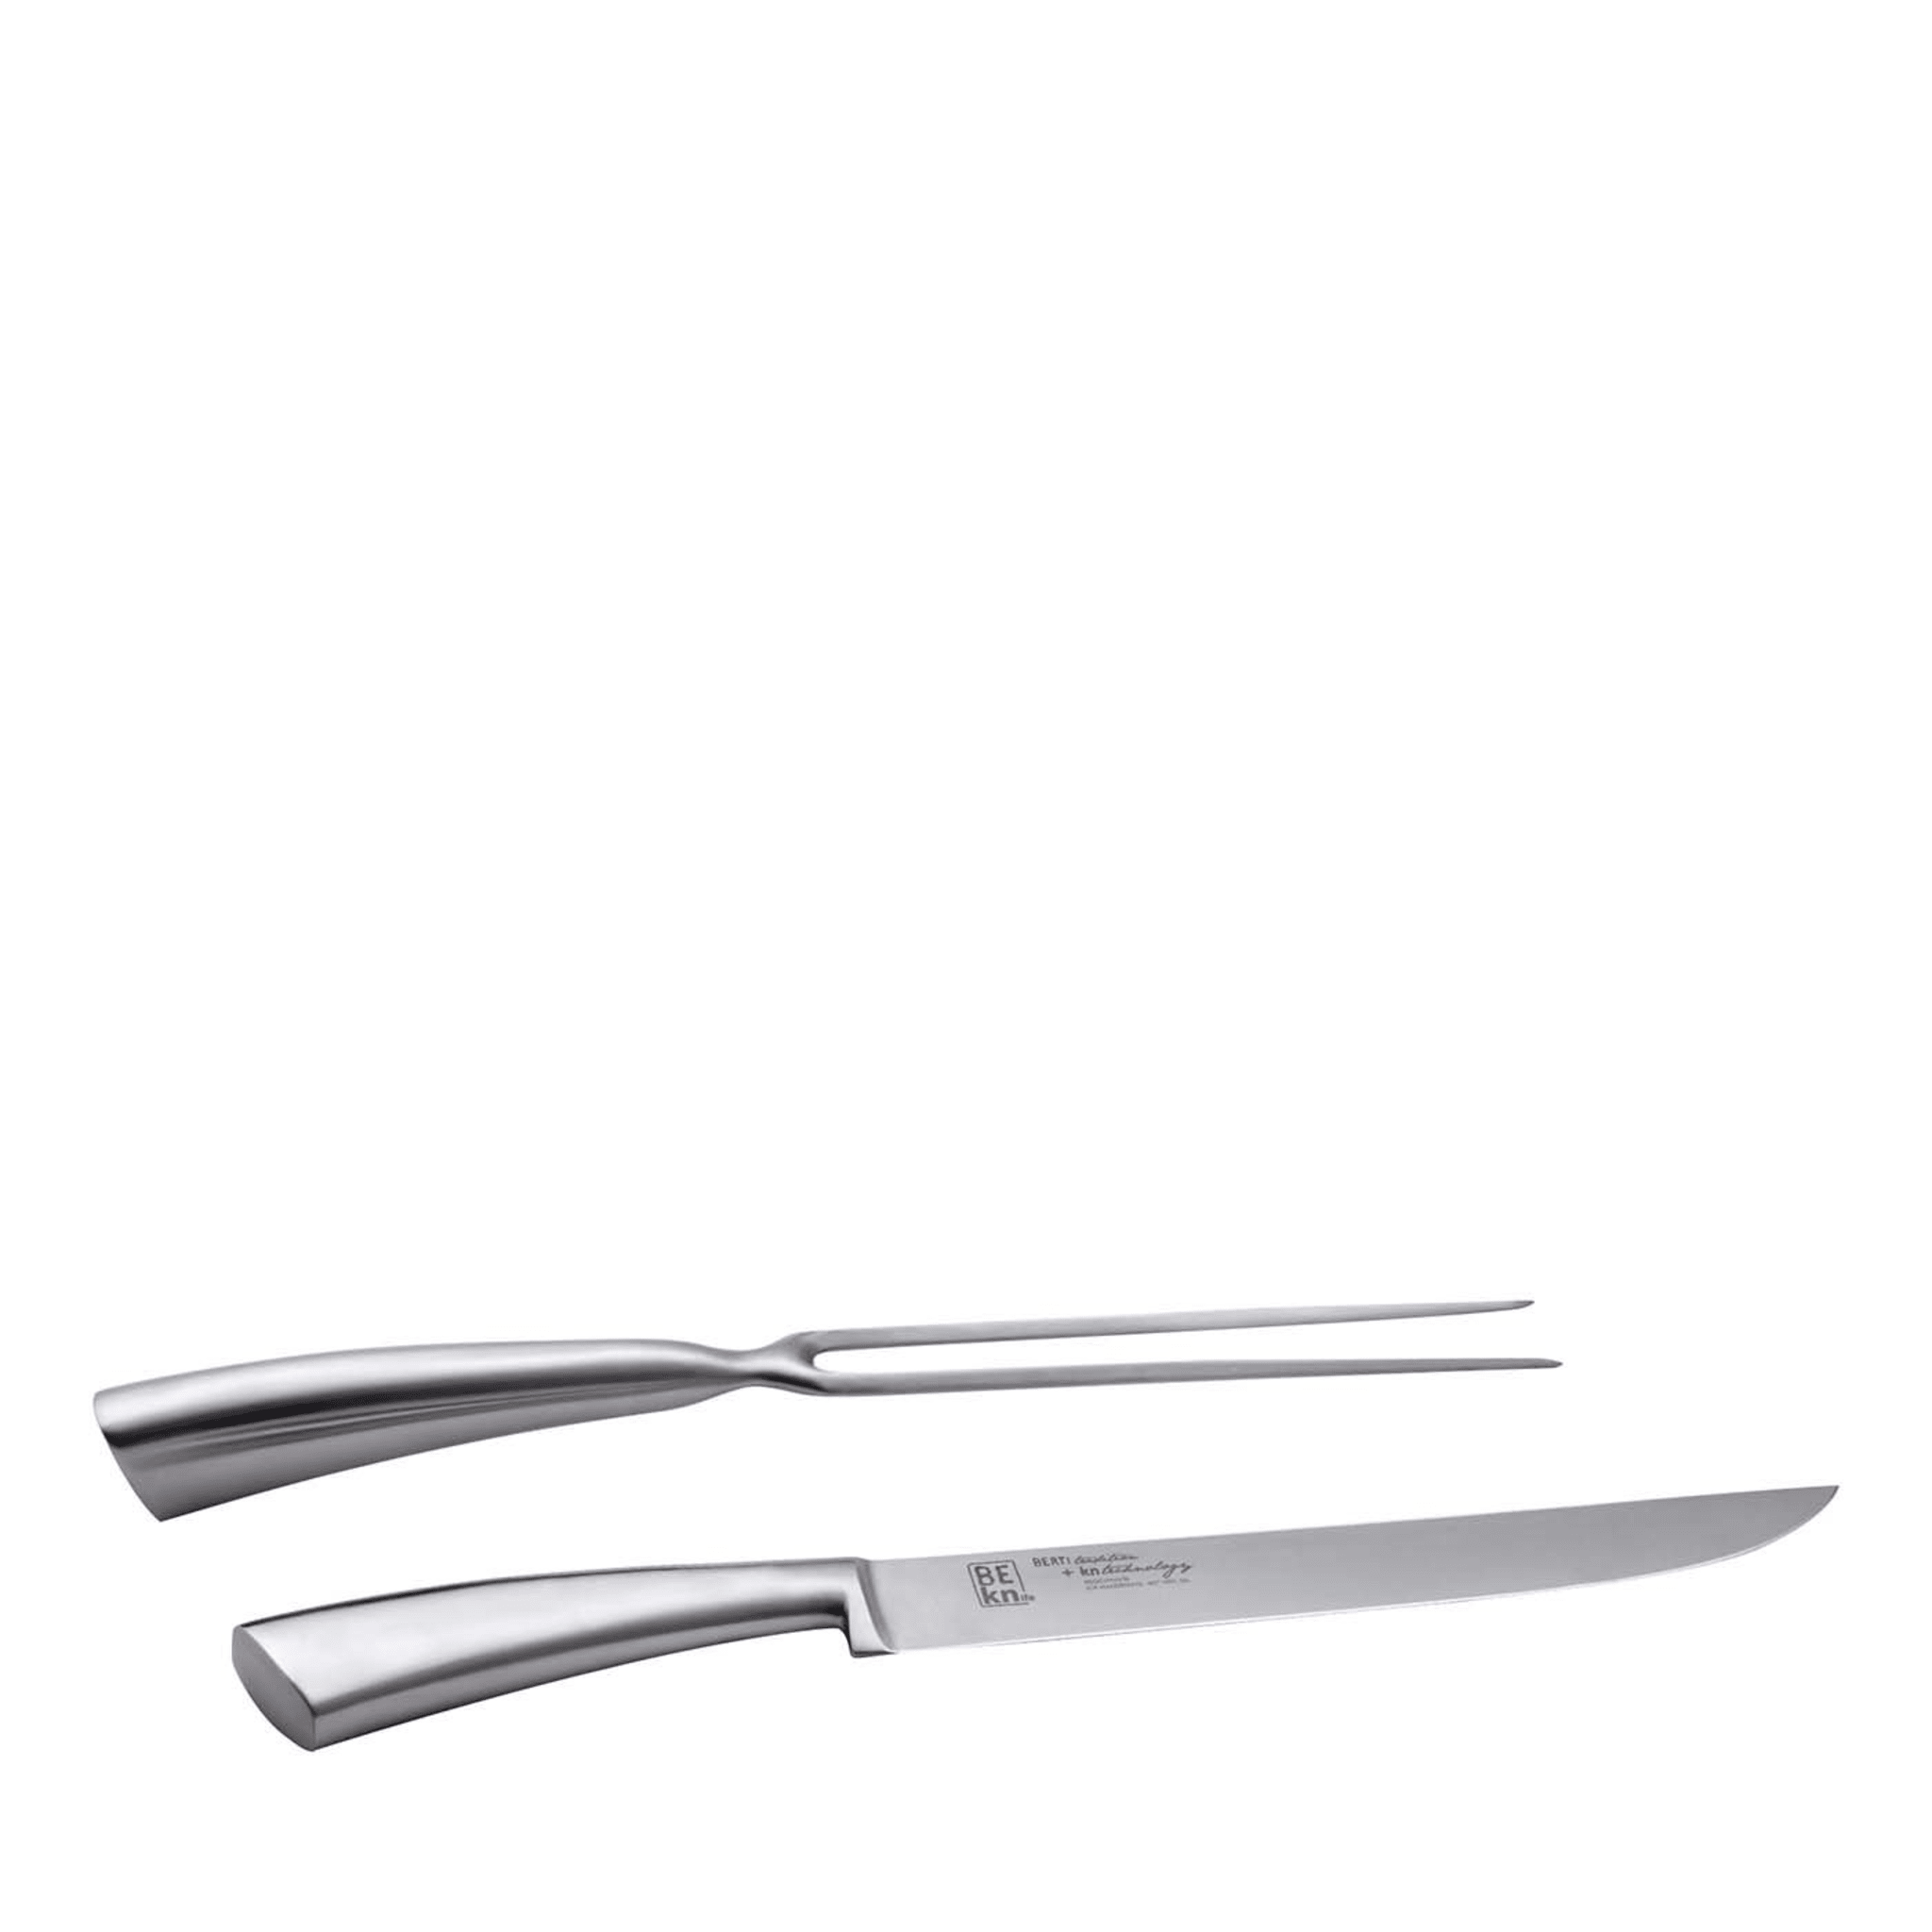 Couteaux et fourchettes à découper